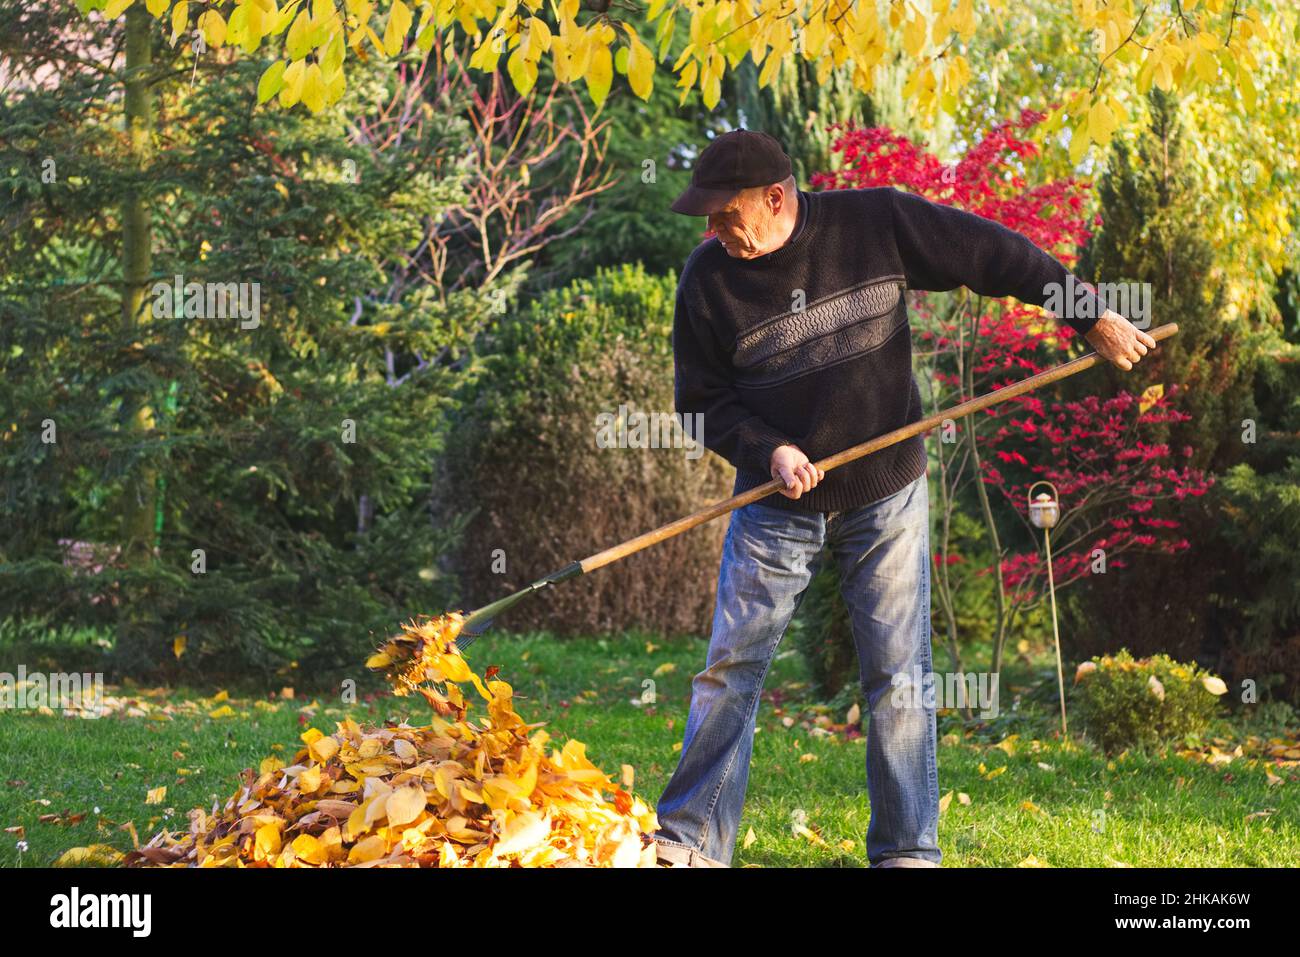 Jardinero rastrillado de hojas caídas en el jardín en otoño. Viejo granjero trabajando en su jardín durante la temporada de otoño. Foto de stock